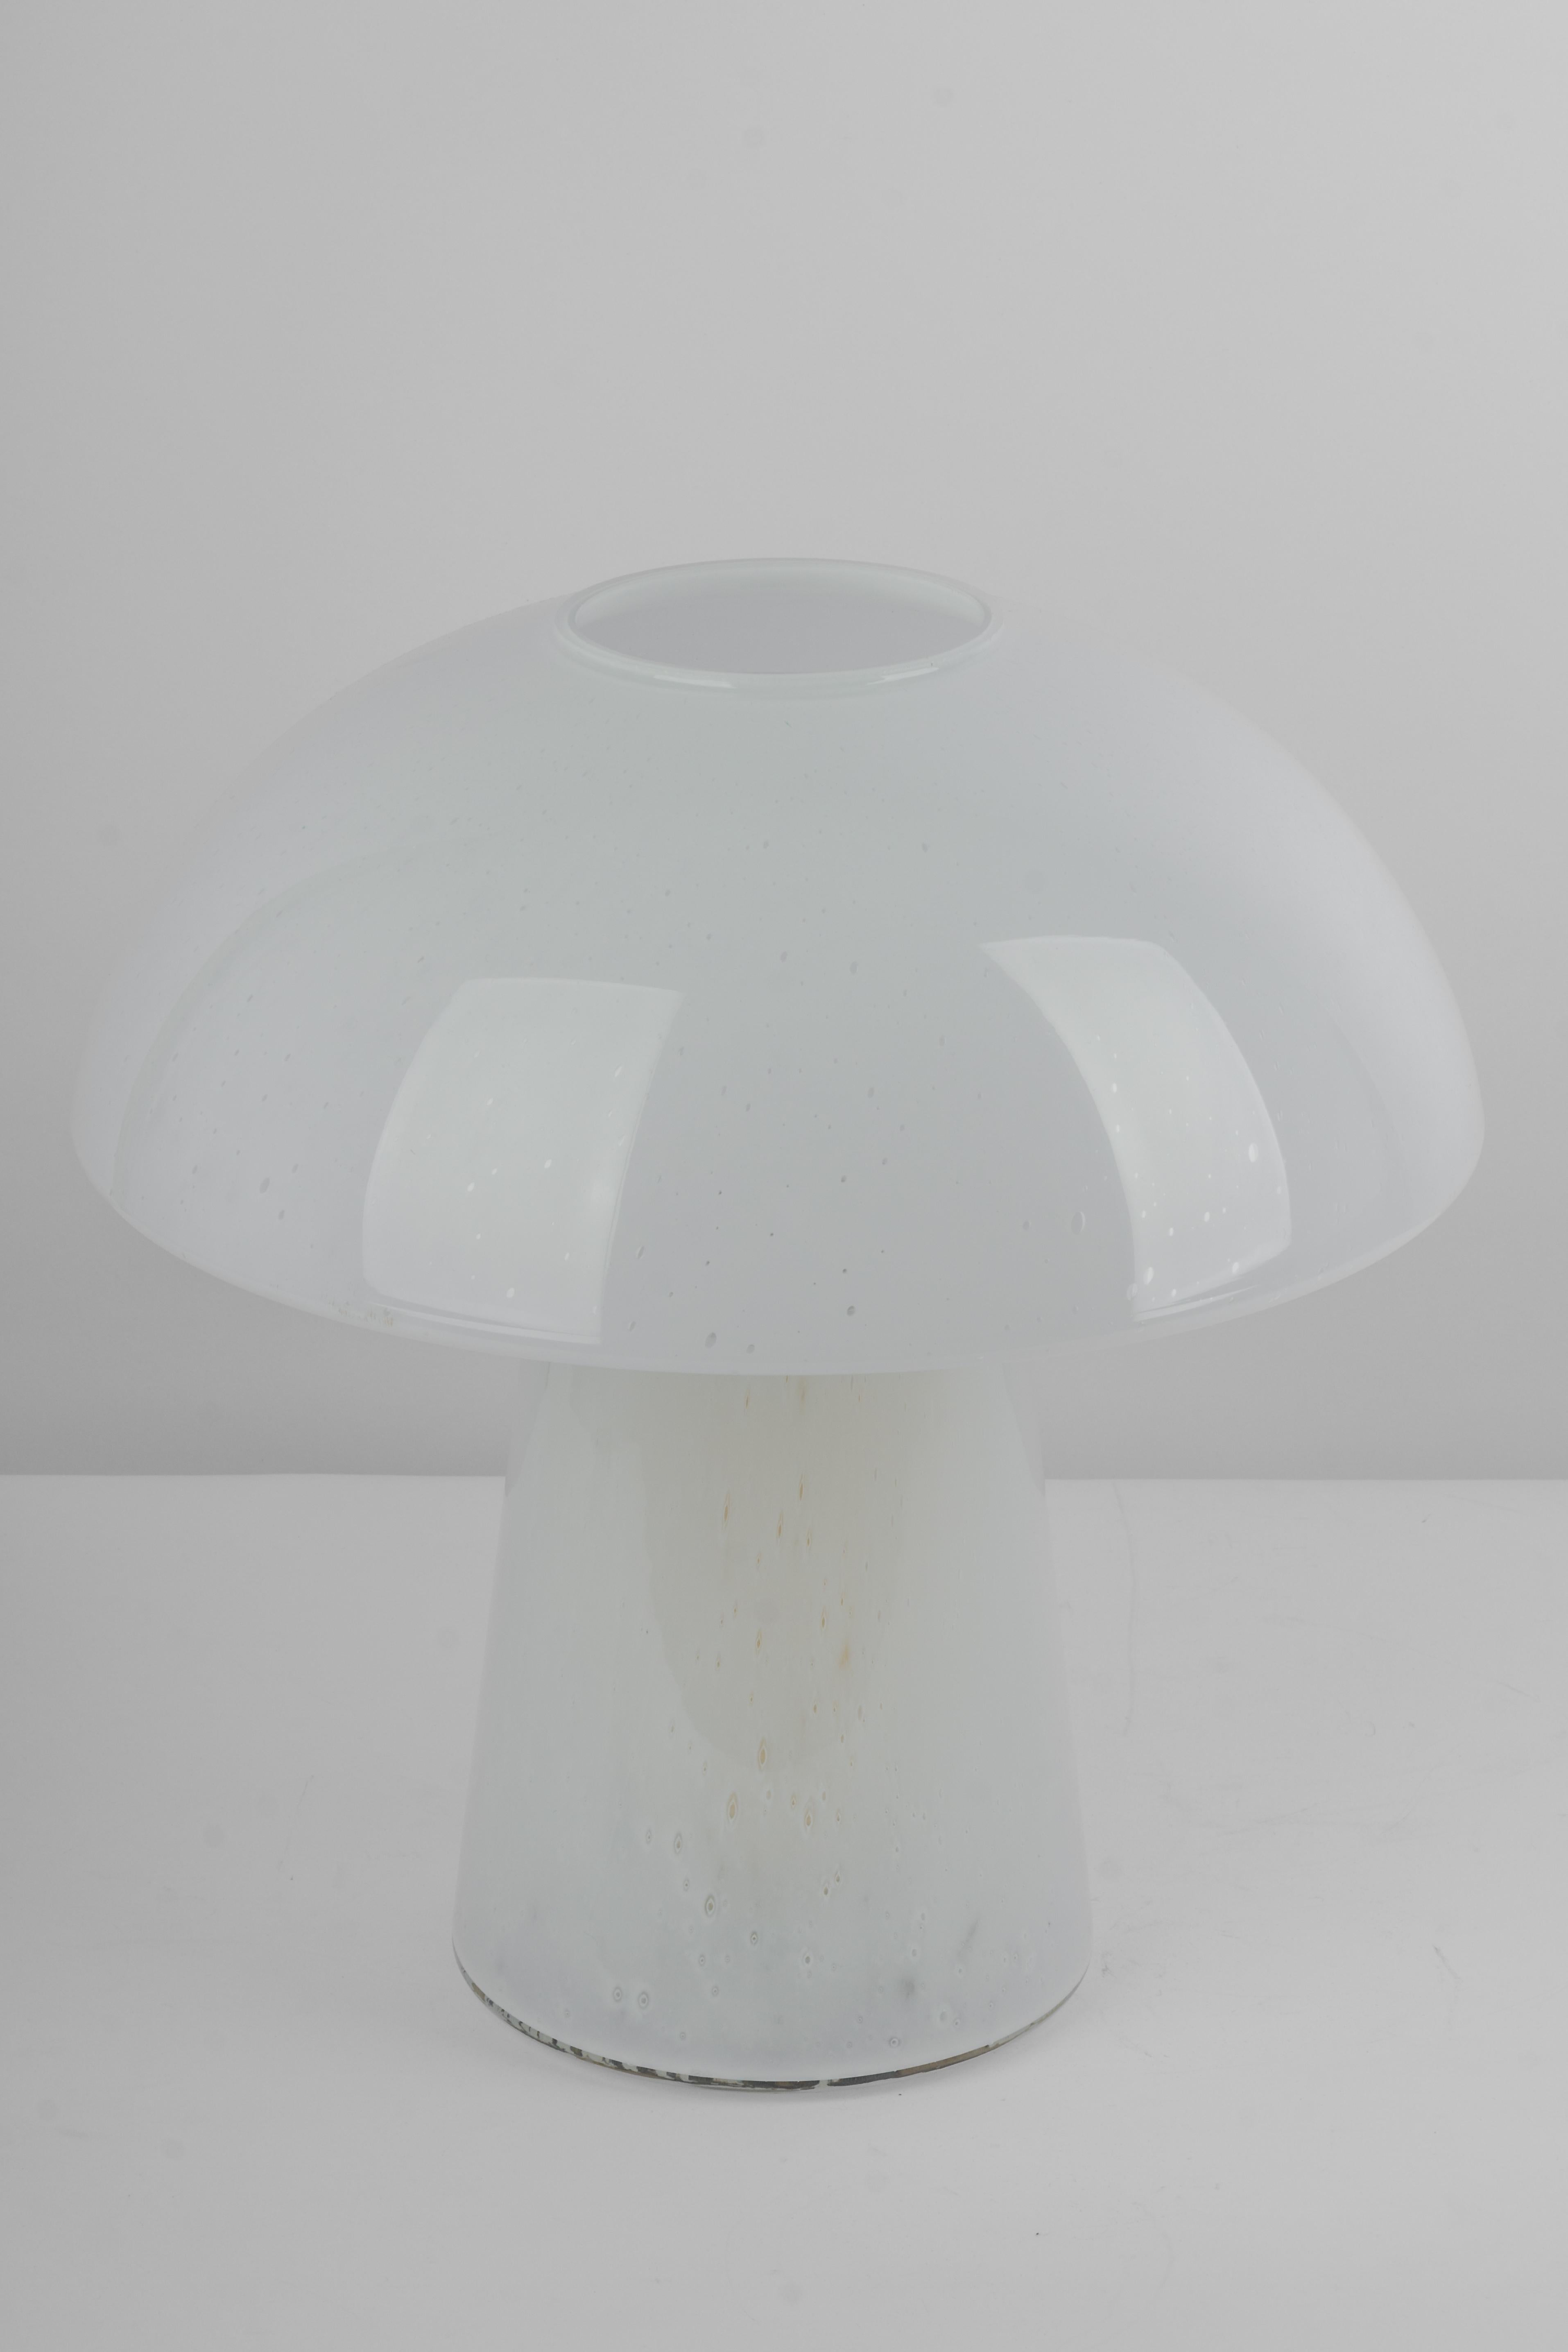 Wunderschöne Pilz-Tischlampe von Limburg, Deutschland, 1970er Jahre. Aus einem einzigen Stück gefertigt.
Der große Glaskörper und seine kantige Qualität bilden einen schönen Kontrast zu der glatten Oberfläche und der Form des Pilzes. 

Maße: Große